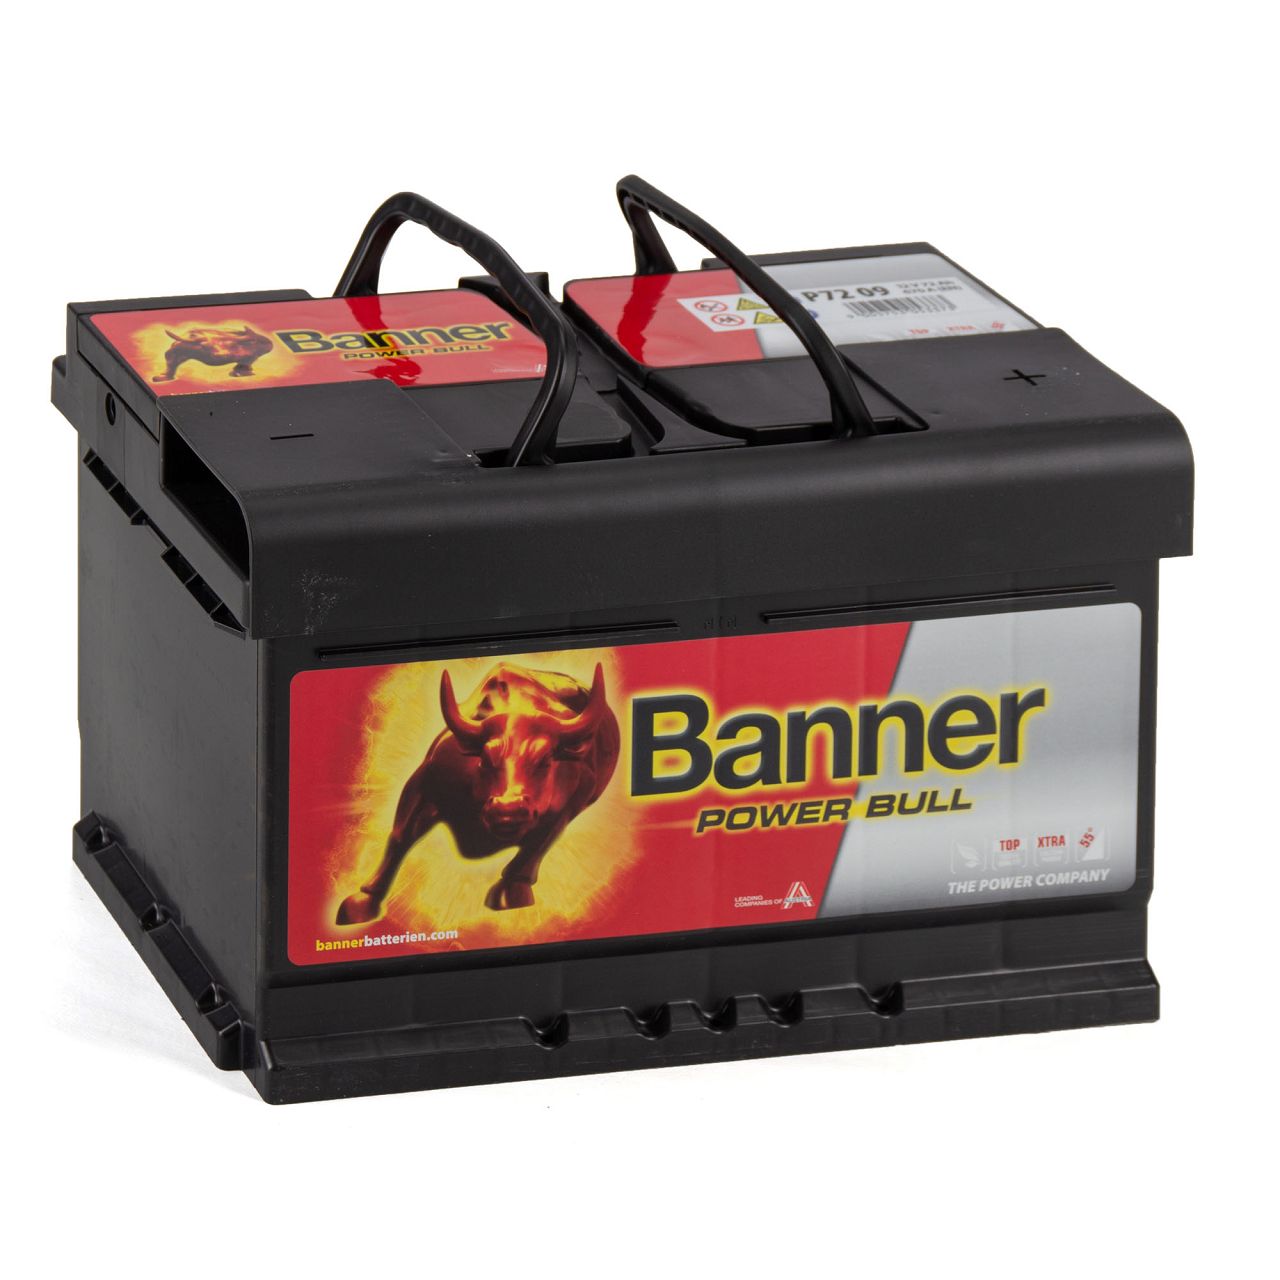 BANNER 57209 P7209 Power Bull Autobatterie Batterie 12V 72Ah 670A